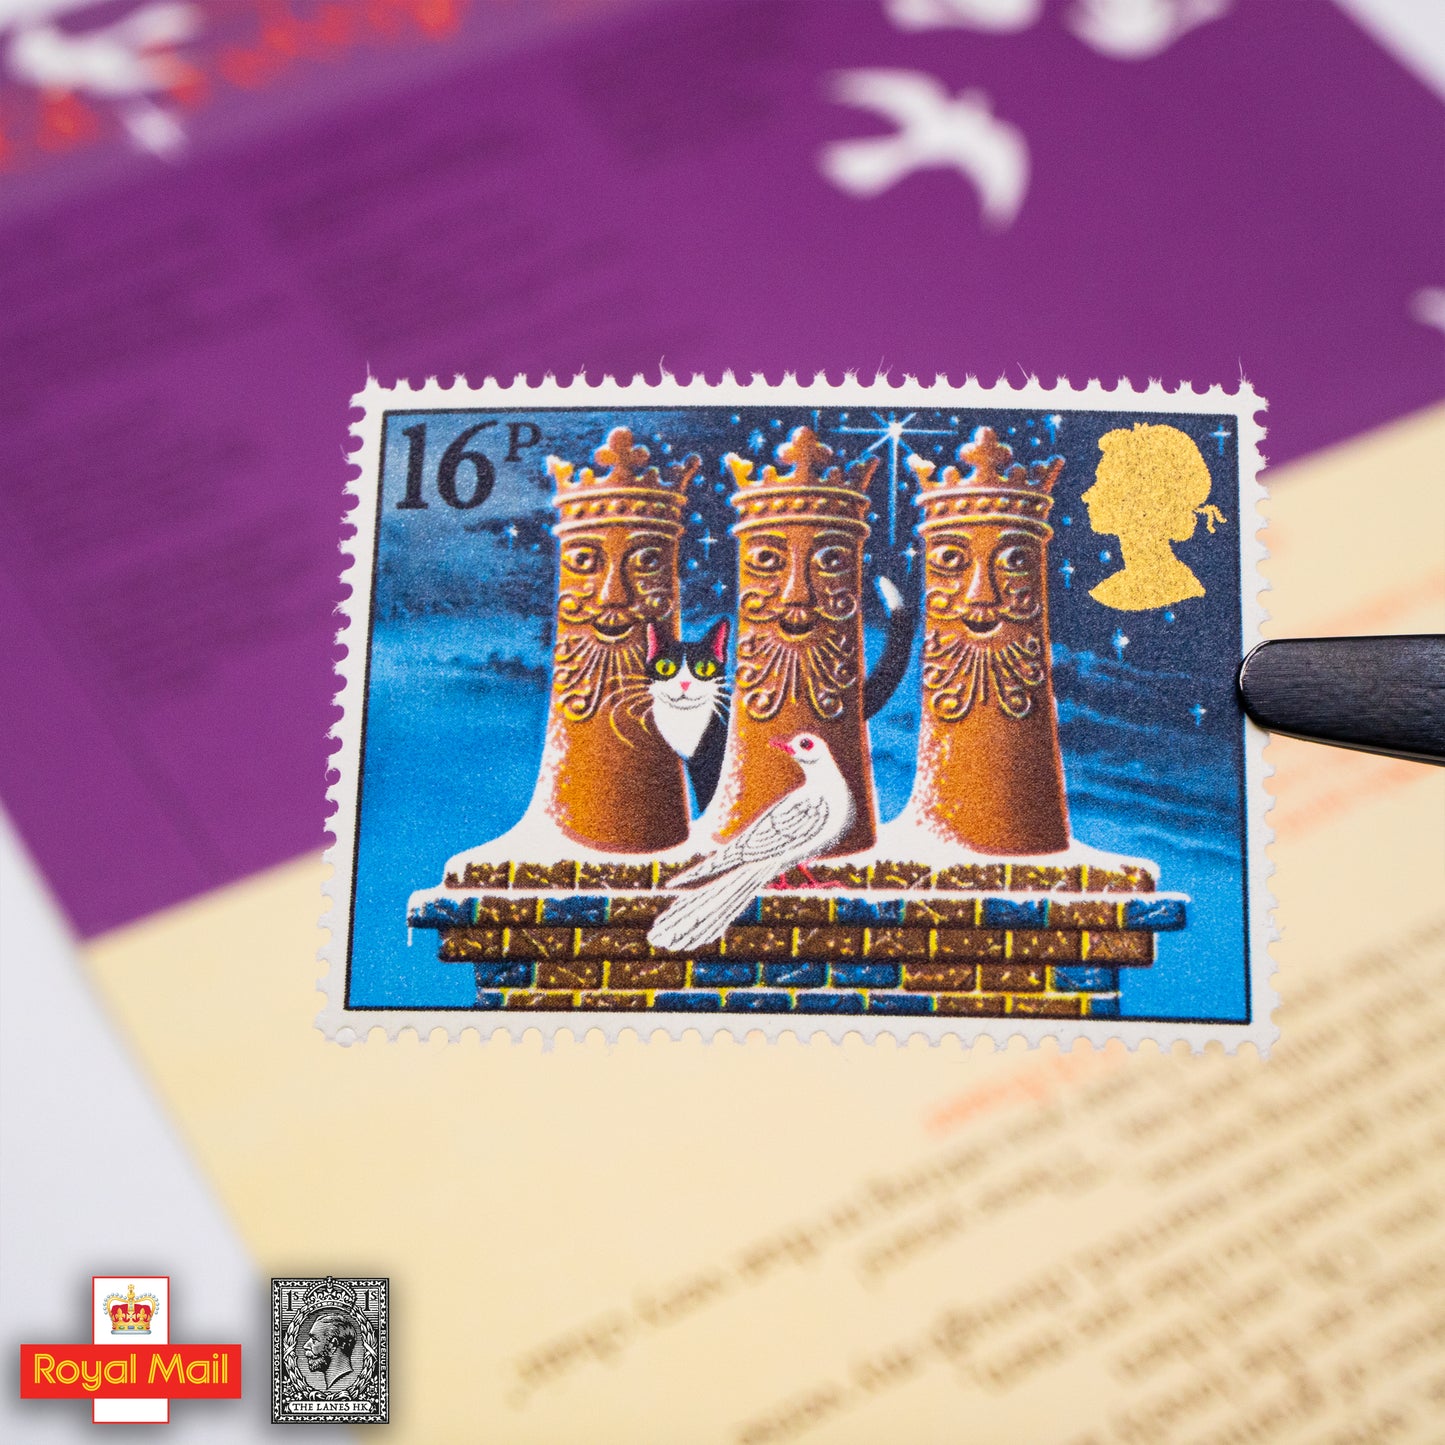 #148: 1983年 聖誕節 紀念郵票展示包